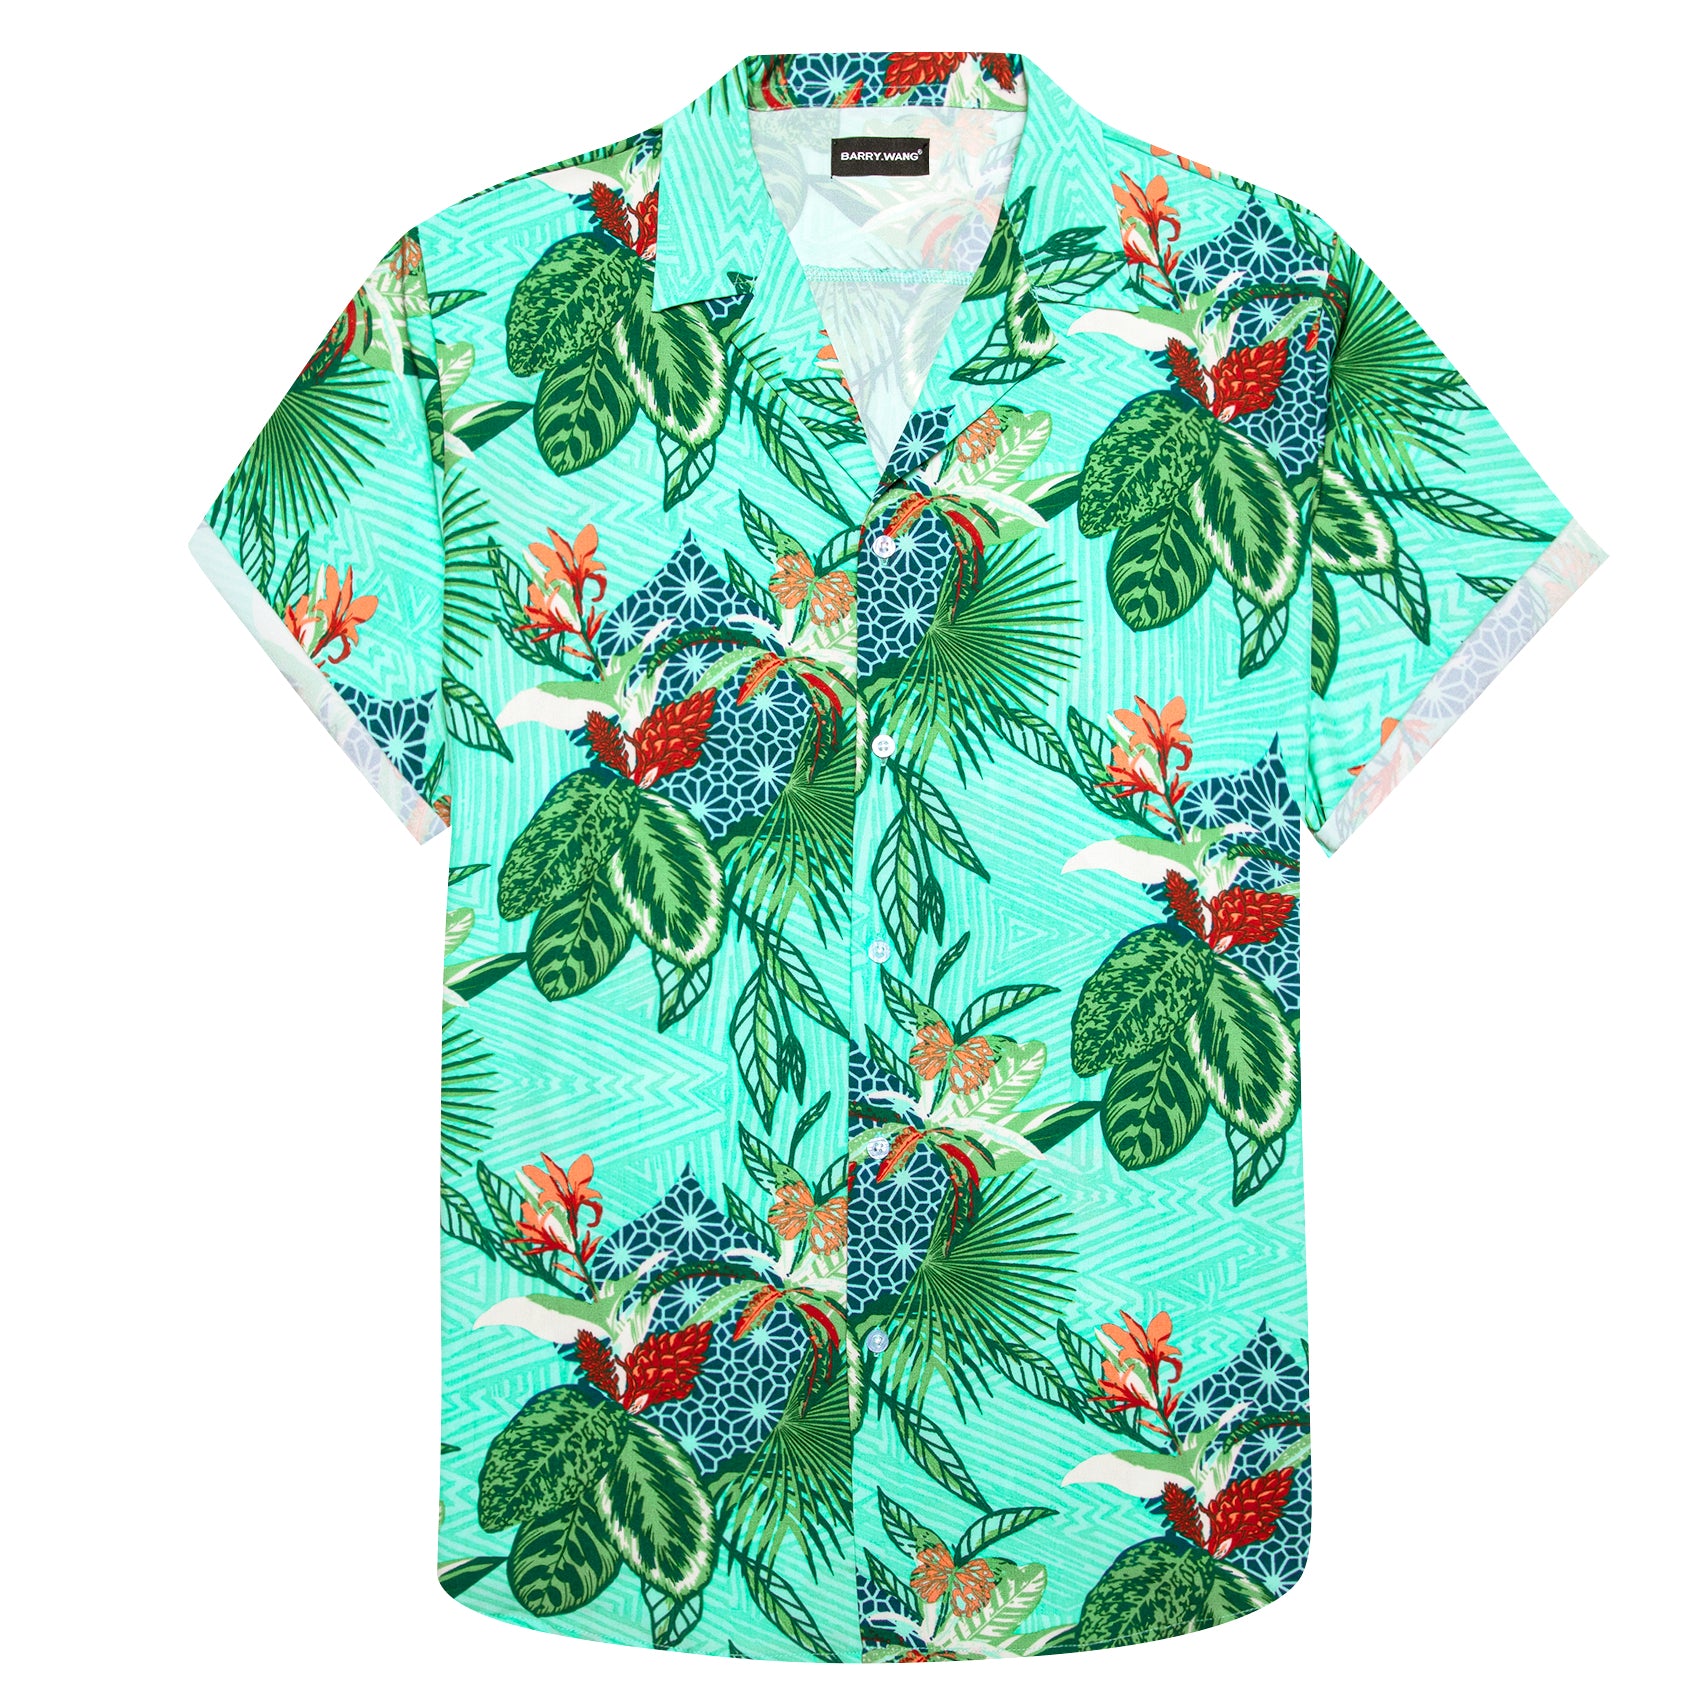 Barry Wang Men's Shirt Turquoise Floral Short Sleeves Silk Summer Hawaii Shirt